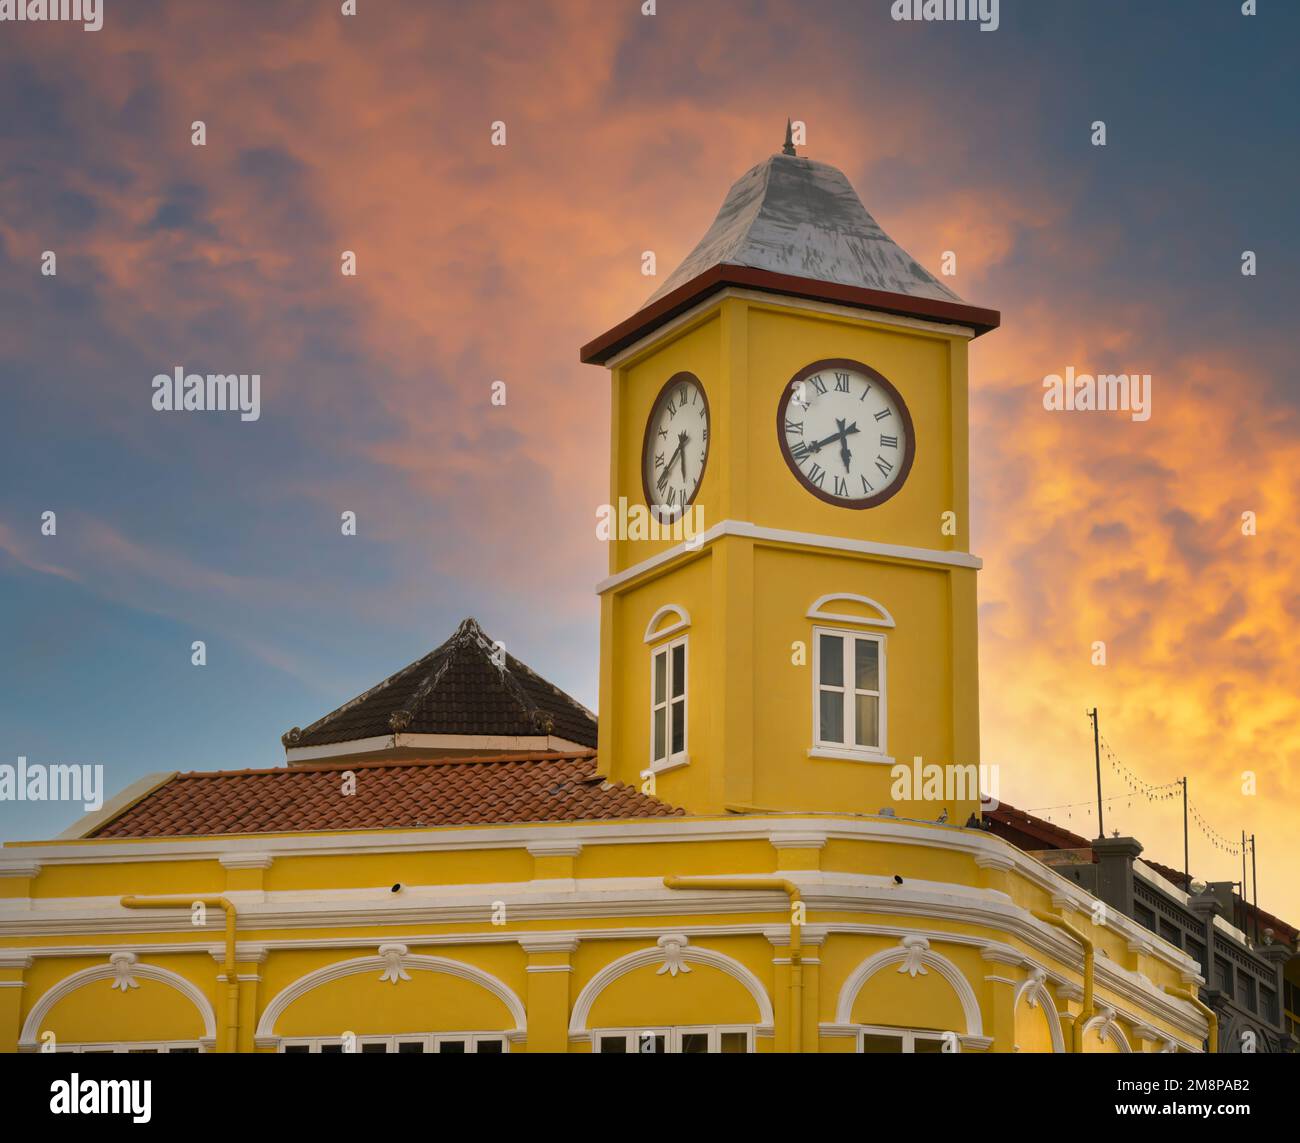 Città vecchia di Phuket. Famosa vecchia torre dell'orologio al tramonto. Architettura sino-portoghese. Destinazioni di viaggio principali in Thailandia Foto Stock